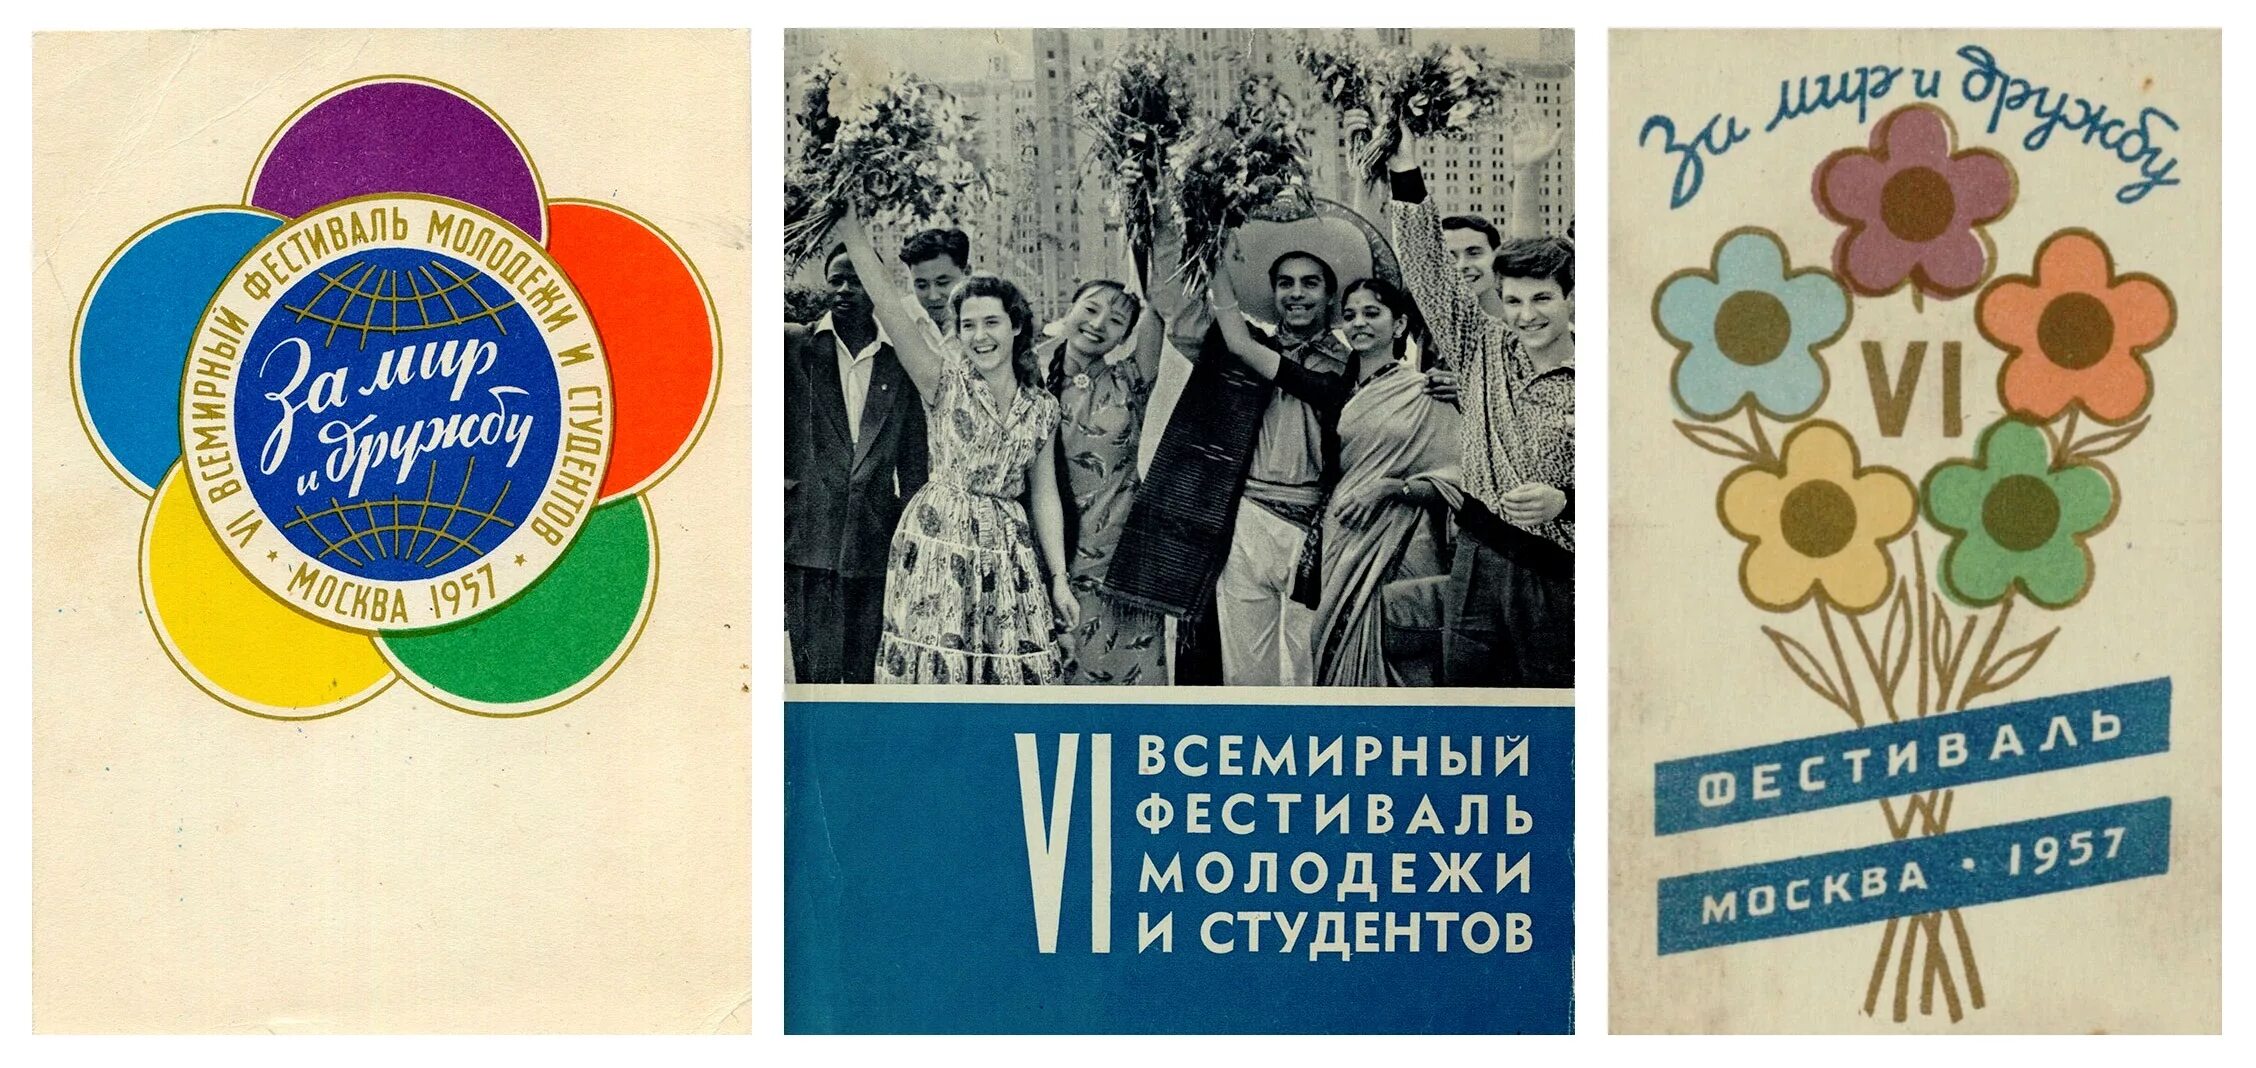 Эмблема фестиваля молодежи и студентов 1957. Всемирный фестиваль молодежи 1957 в Москве. Всемирный фестиваль молодёжи и студентов 1957 Хрущев. Vi ВФМС 1957 года в Москве.